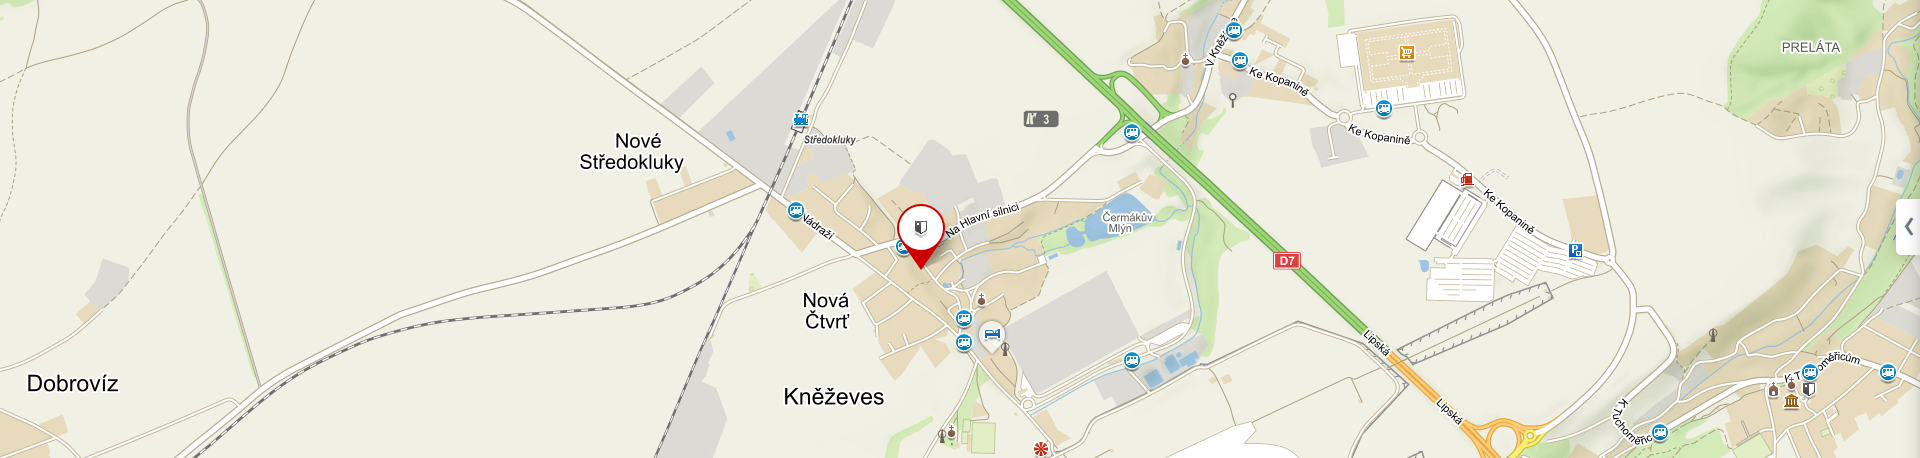 Mapa obce Kněževes